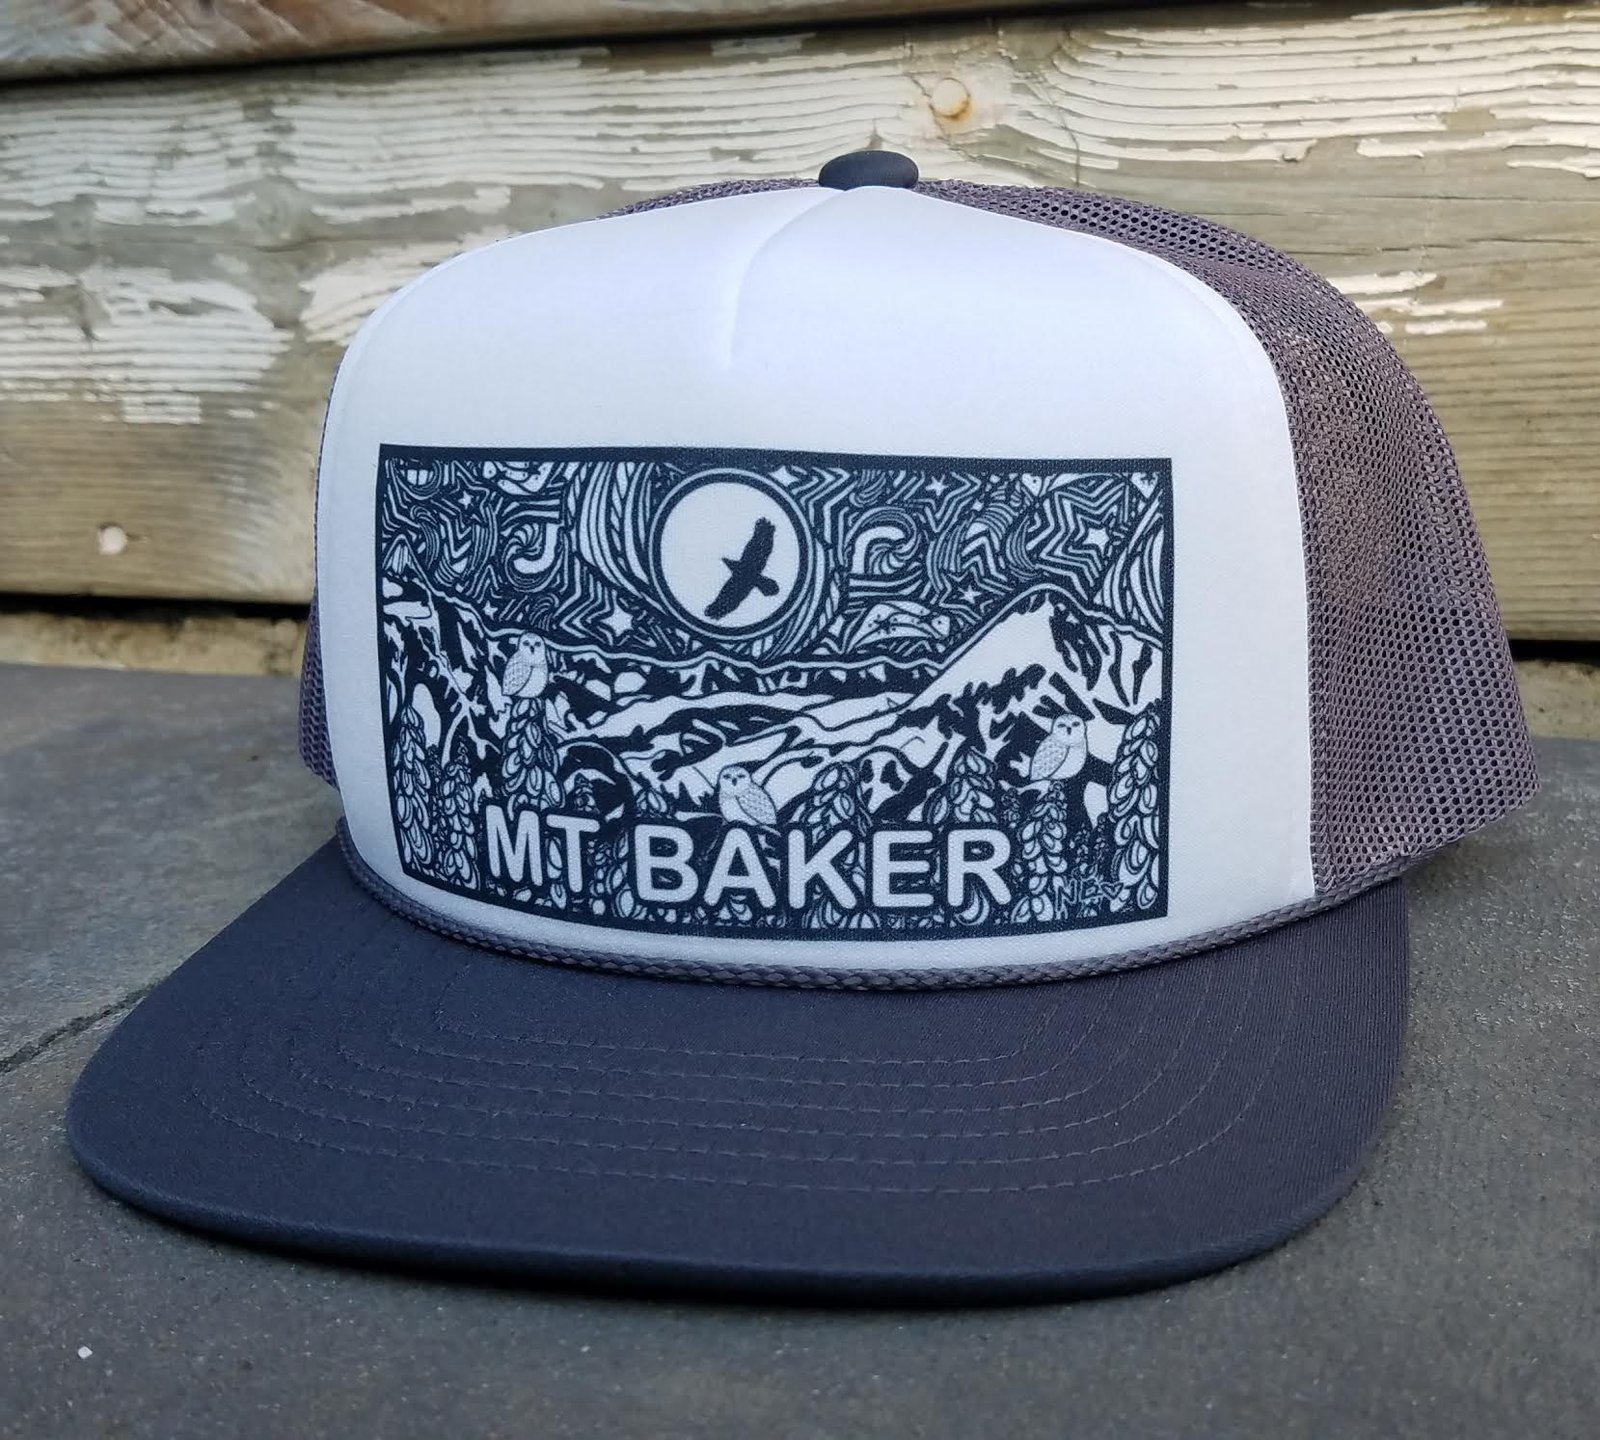 Order Trucker Baker Cap, white/red